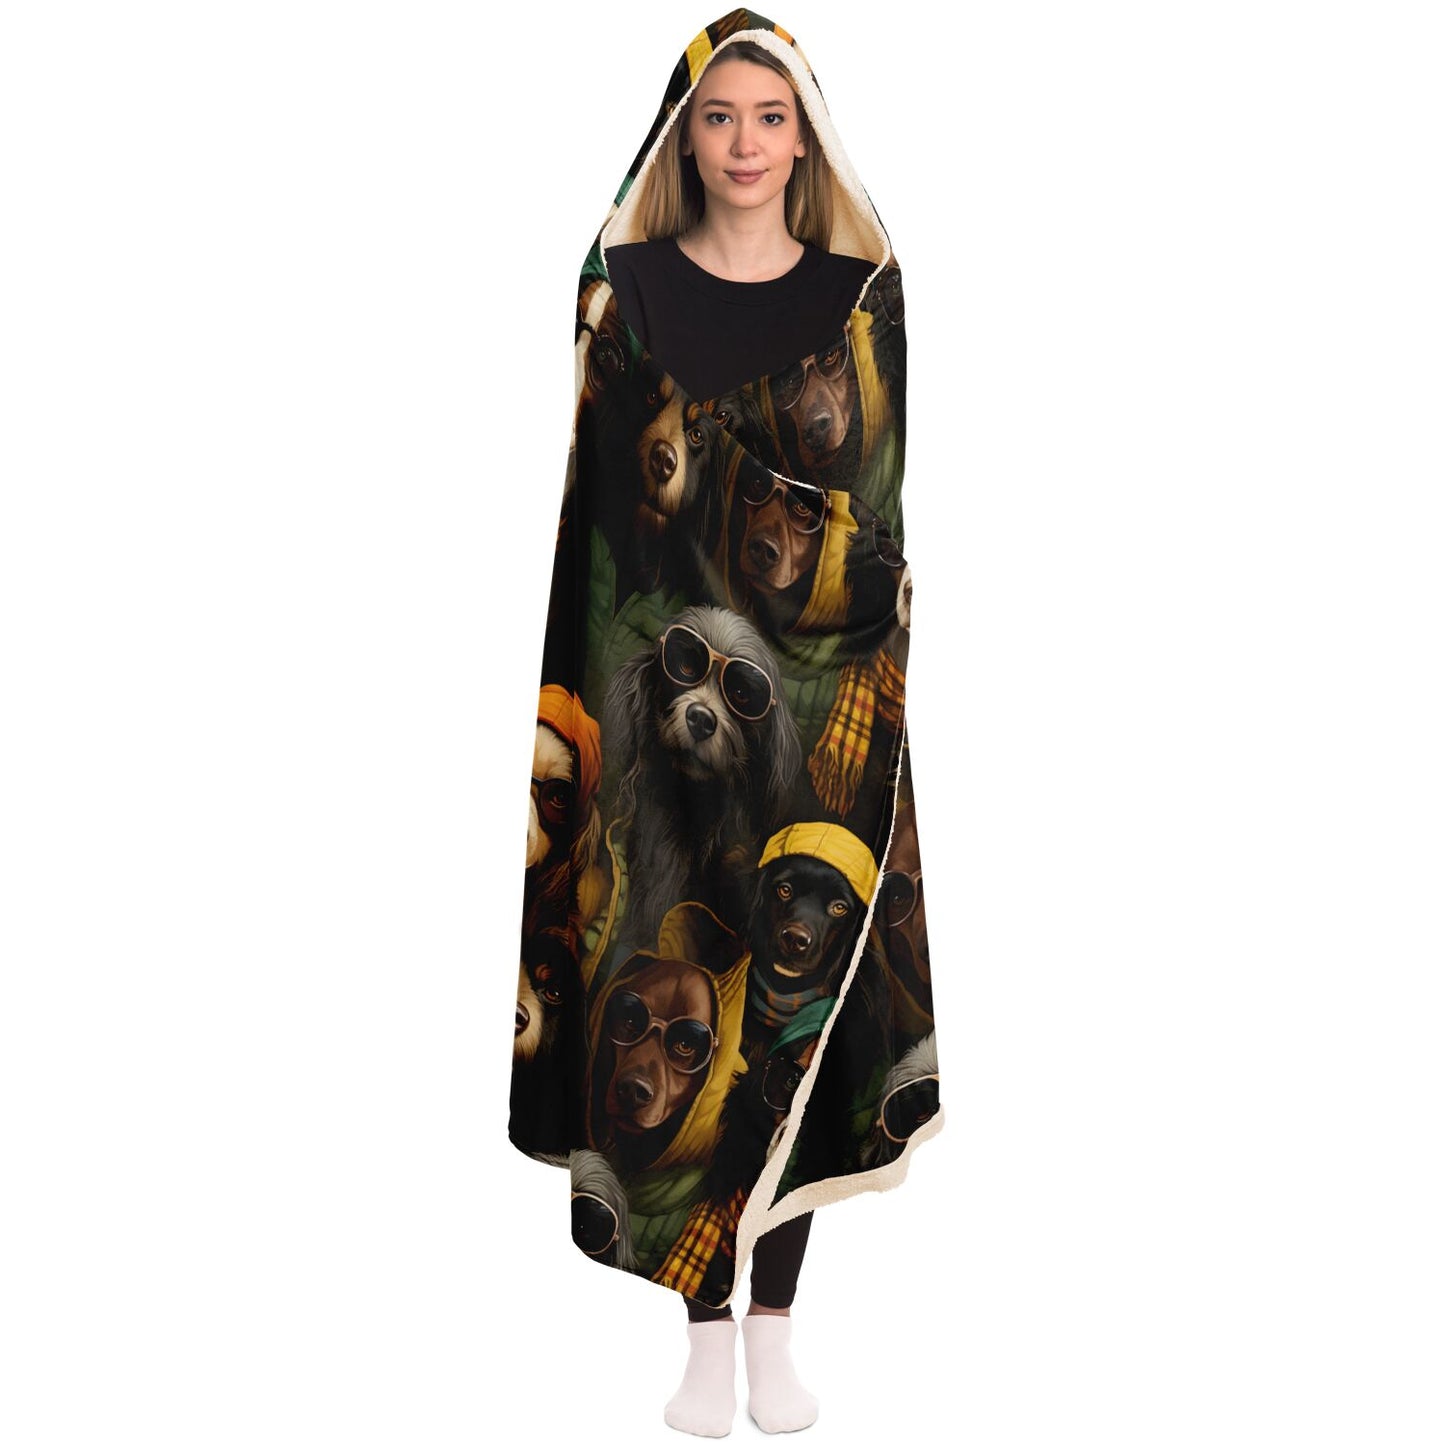 Kozy Komfort Hooded Cool Dogs Blanket